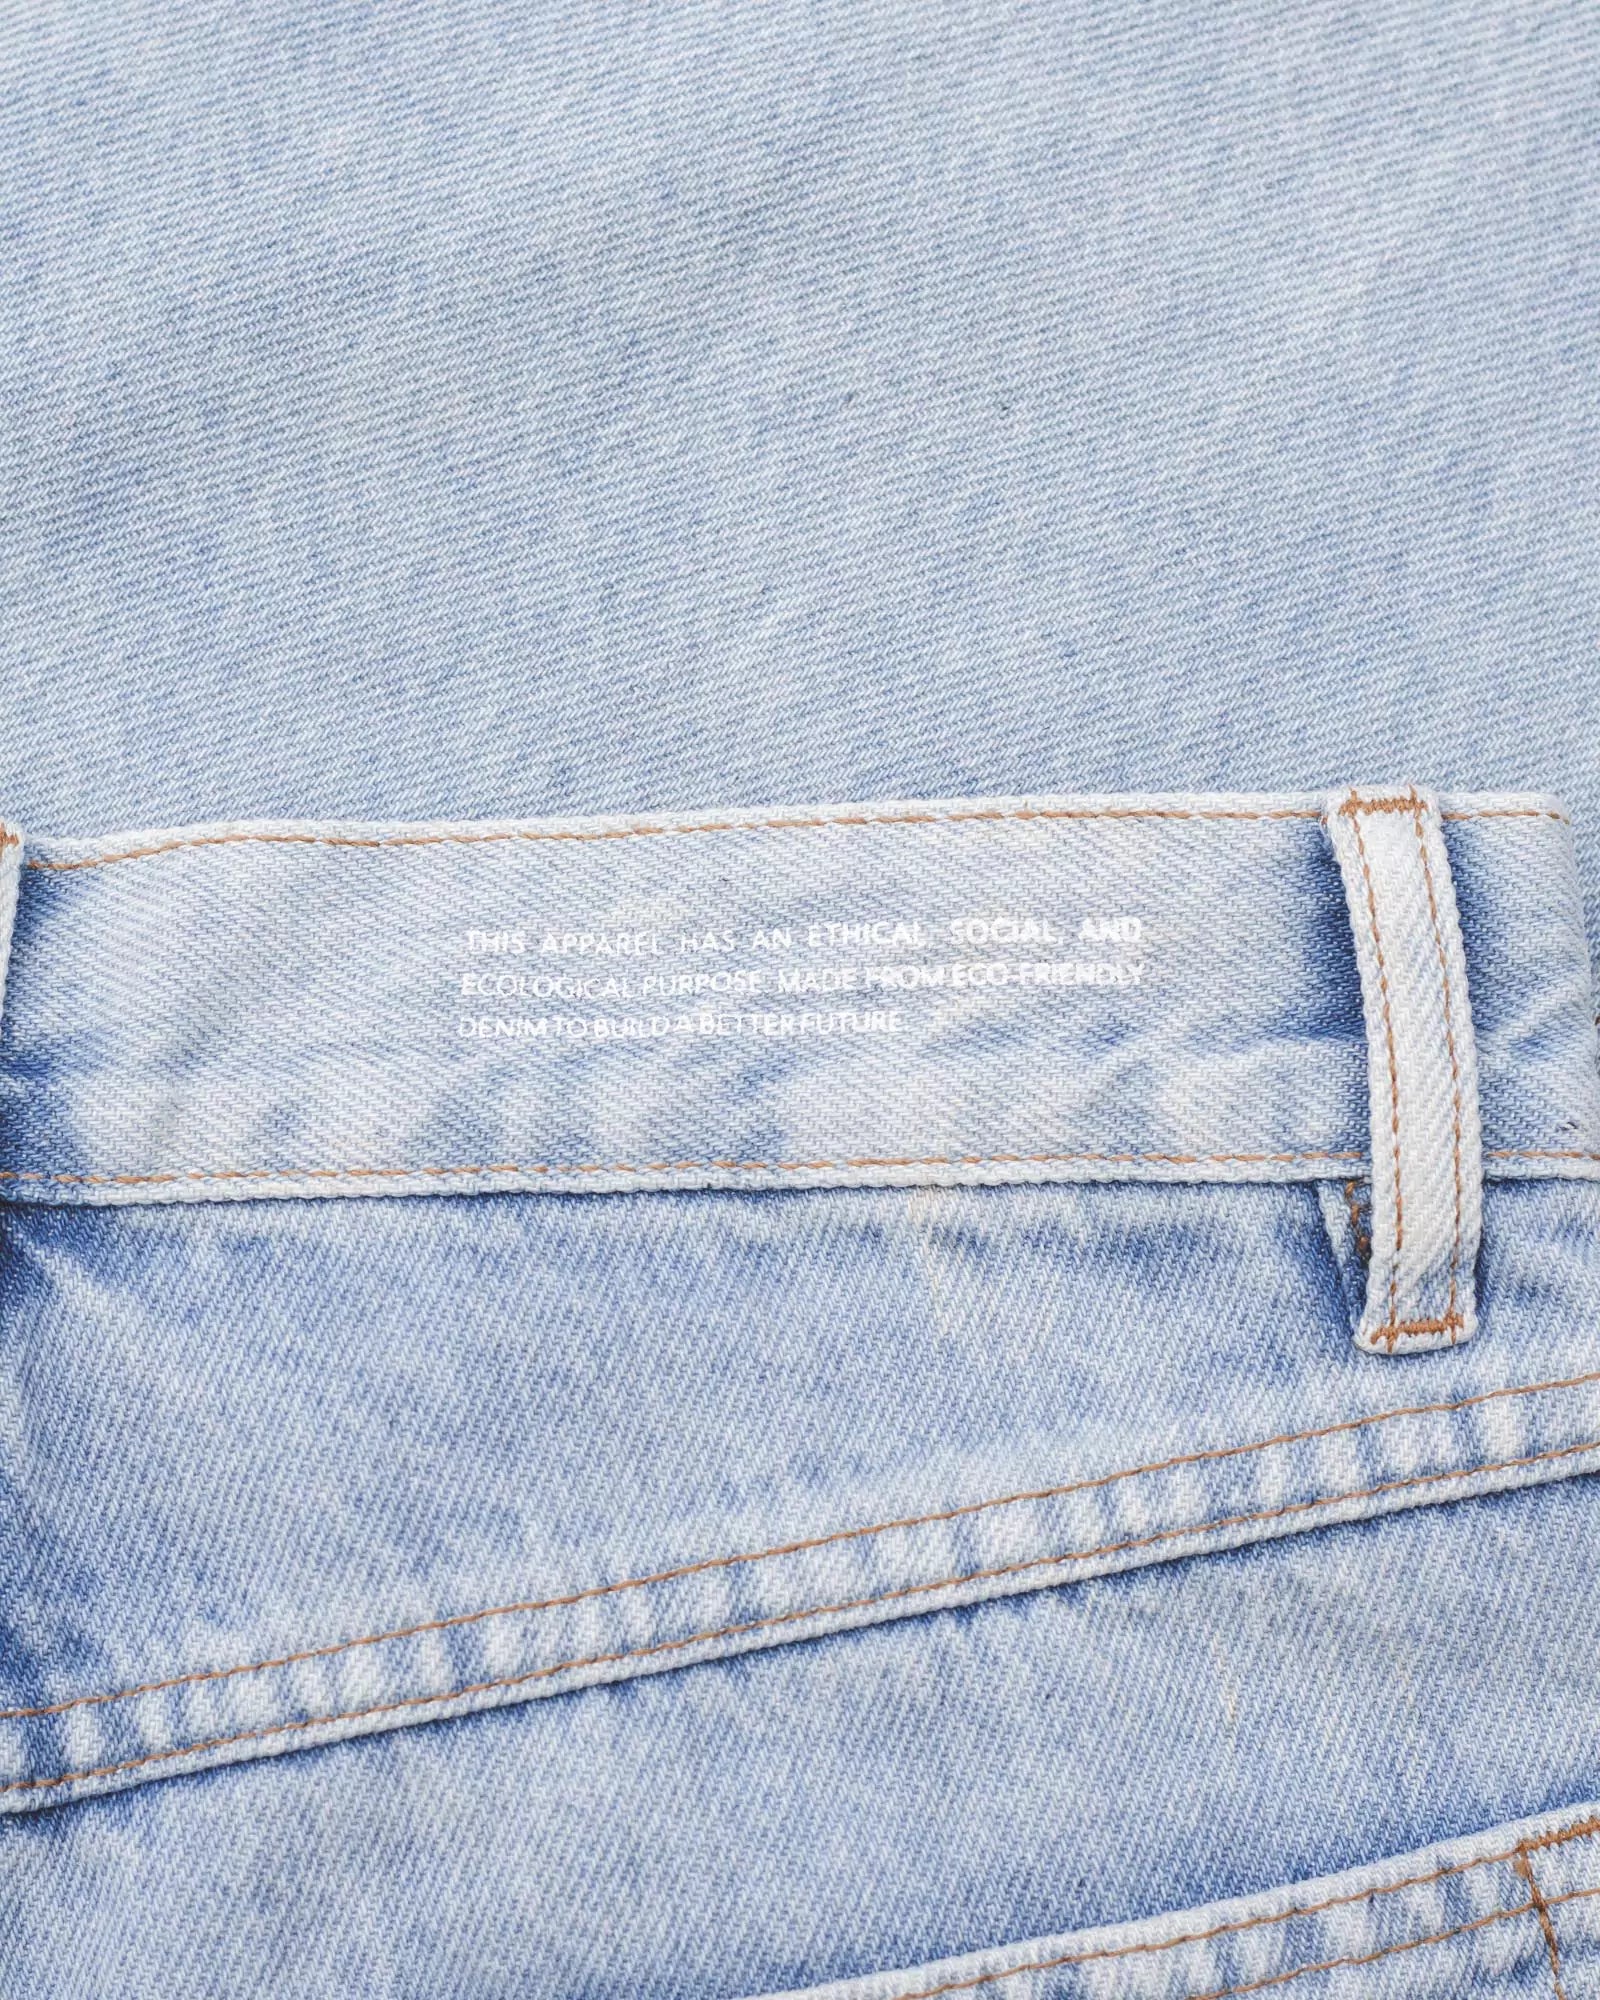 Calça Jeans Reta Azul Claro Eco Denim™. Compre online moda sustentável e atemporal na Minimadeia. Roupas femininas estilosas, básicas e sustentáveis. Foto produto destaque